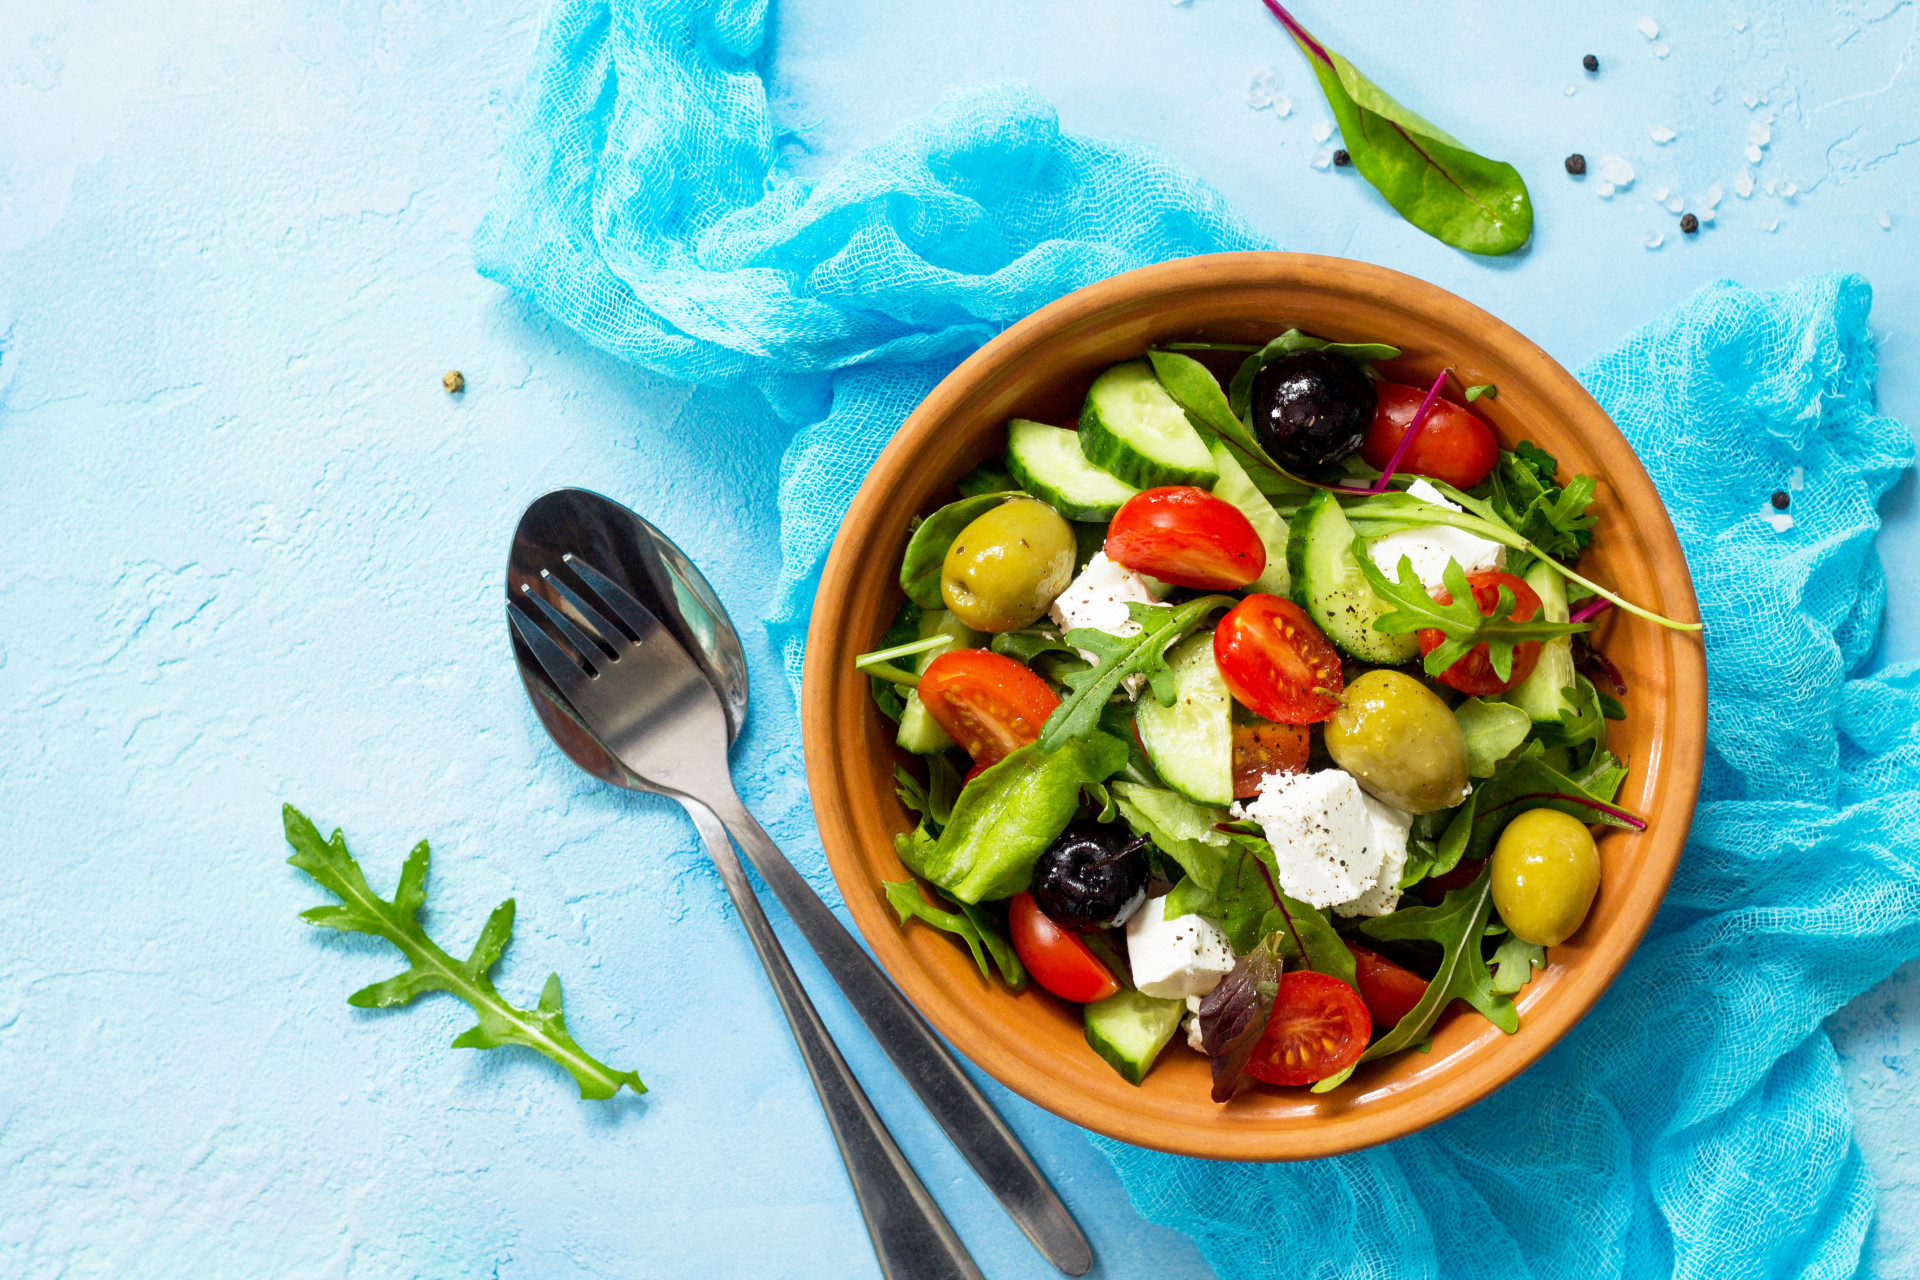 Si vous êtes à la recherche d'un plat plus léger, pourquoi ne pas goûter la salade grecque? Cet assemblage d'ingrédients frais est composé de concombre, d'oignons, d'olives, de tomates, d'origan, de feta, d'huile d'olive et de sel. Idéal en entrée ou en plat principal.<p><a href="https://www.msn.com/fr-fr/community/channel/vid-7xx8mnucu55yw63we9va2gwr7uihbxwc68fxqp25x6tg4ftibpra?cvid=94631541bc0f4f89bfd59158d696ad7e">Suivez-nous et accédez tous les jours à du contenu exclusif</a></p>